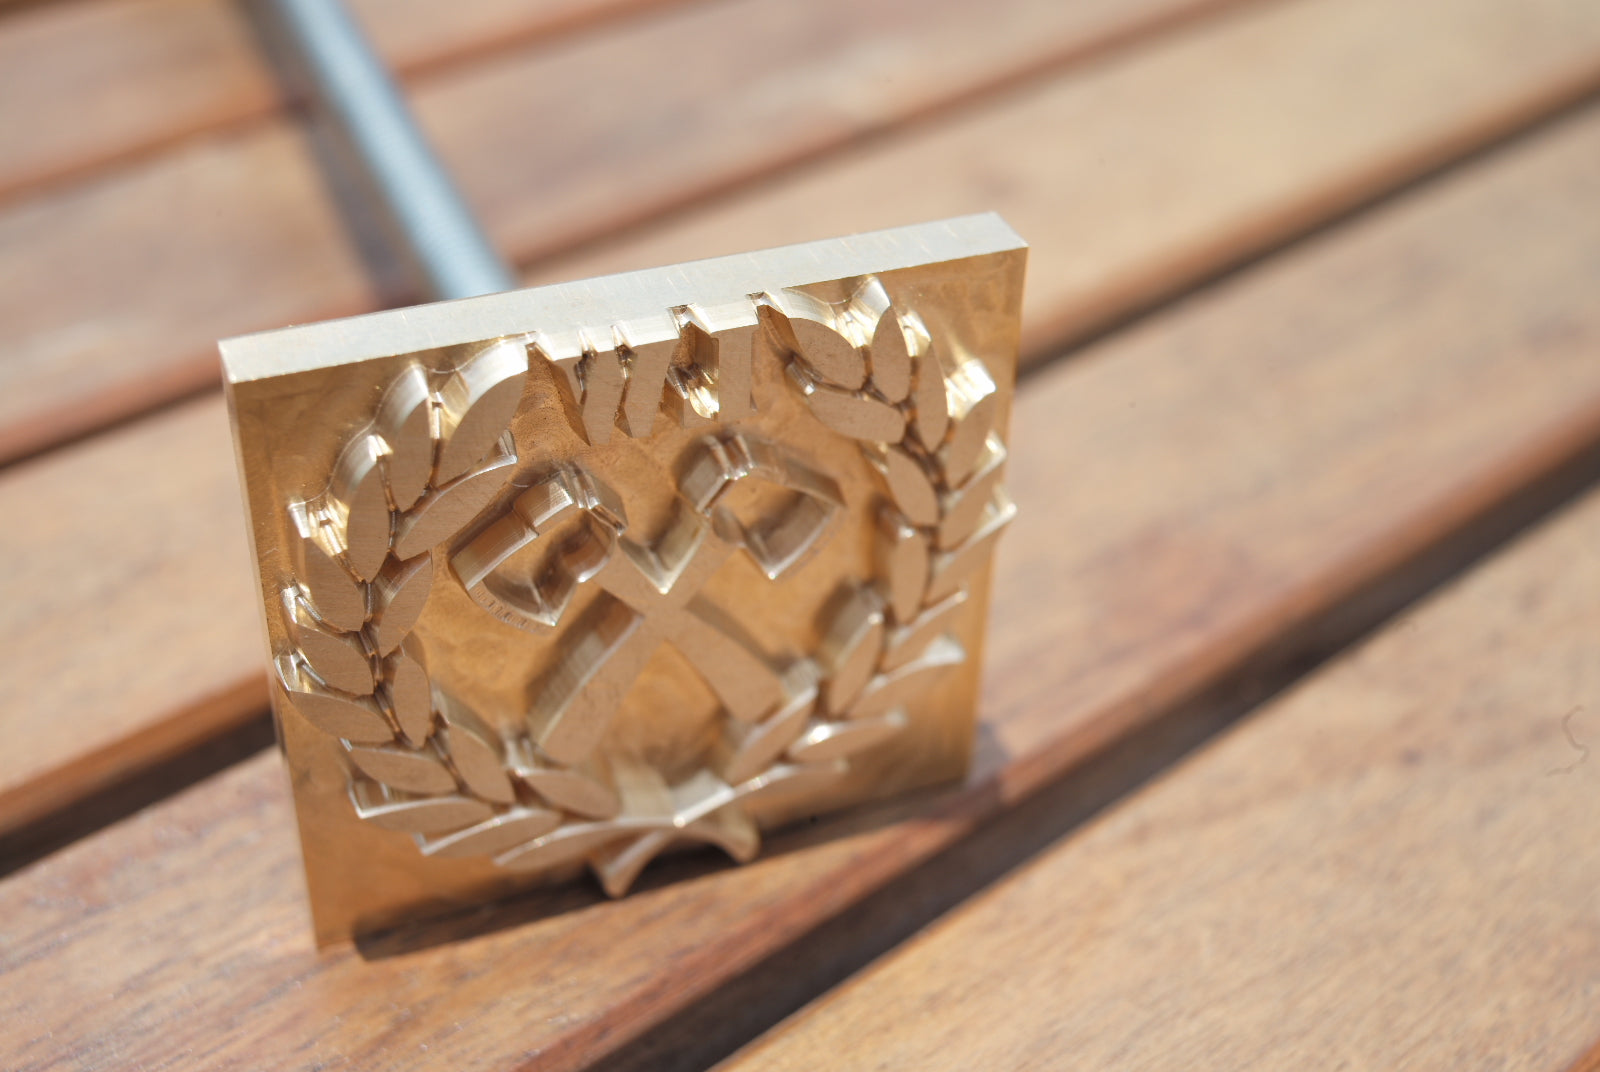 custom logo branding iron for wood